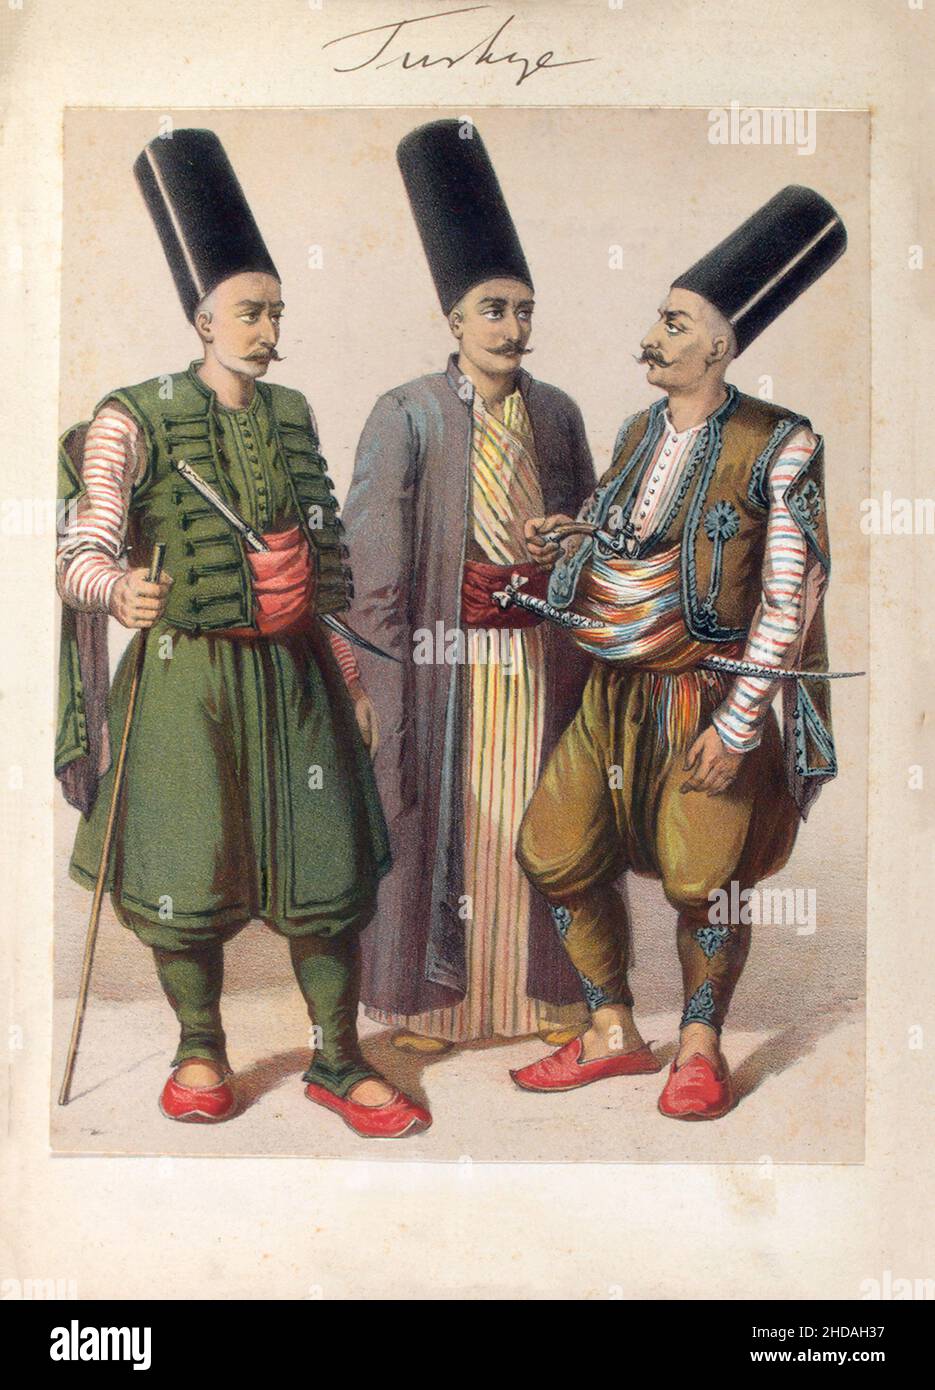 Litografia vintage dell'esercito turco del 19th secolo. Khumbaradji (bombardamenti turchi). 1820 Foto Stock